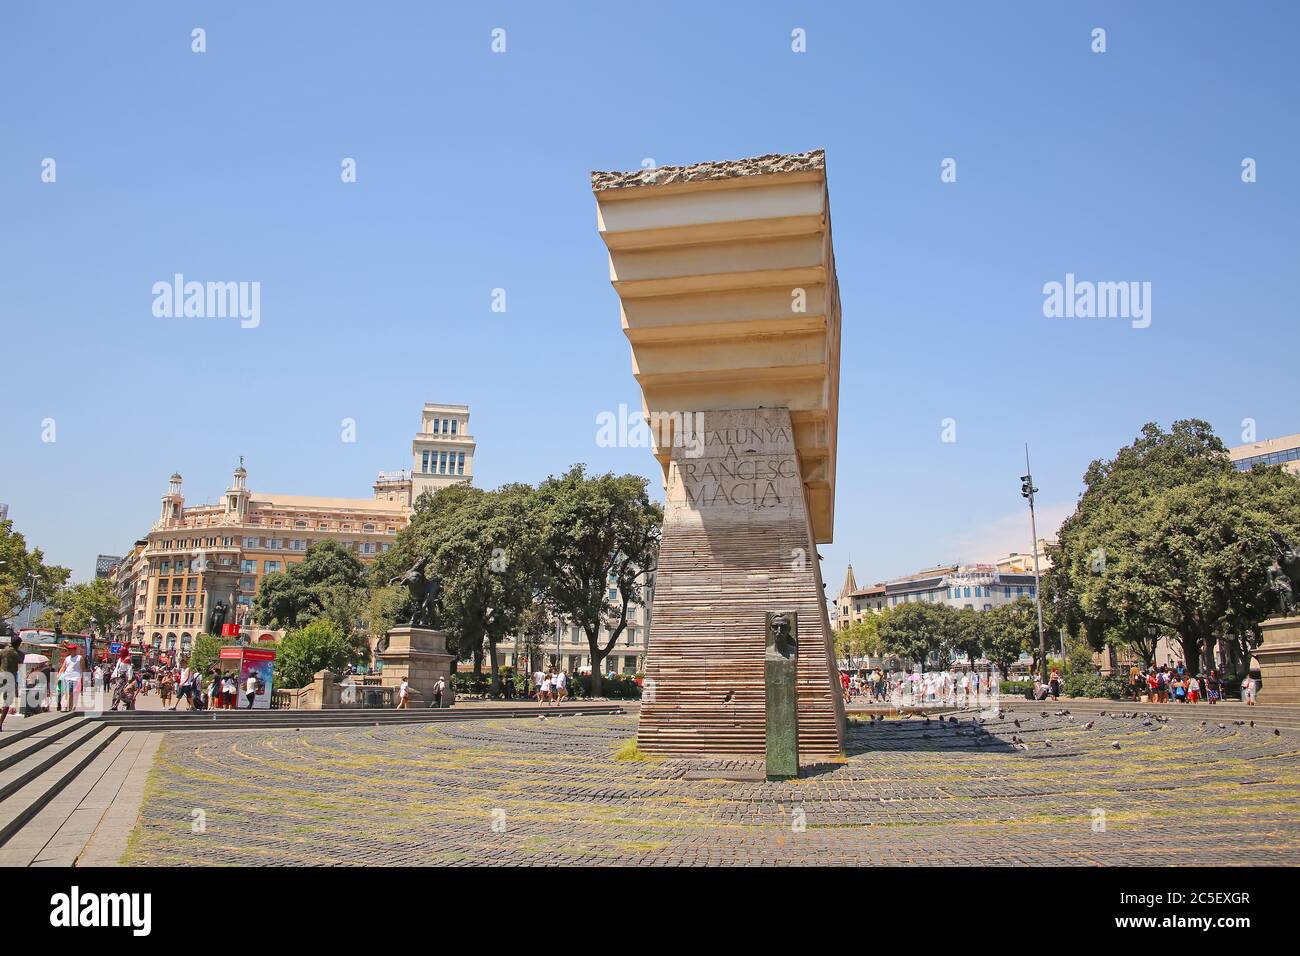 Belle sculpture au centre de la ville dans le centre-ville, Plaça de Catalunya ou place de Catalogne, Barcelone, Espagne. Banque D'Images